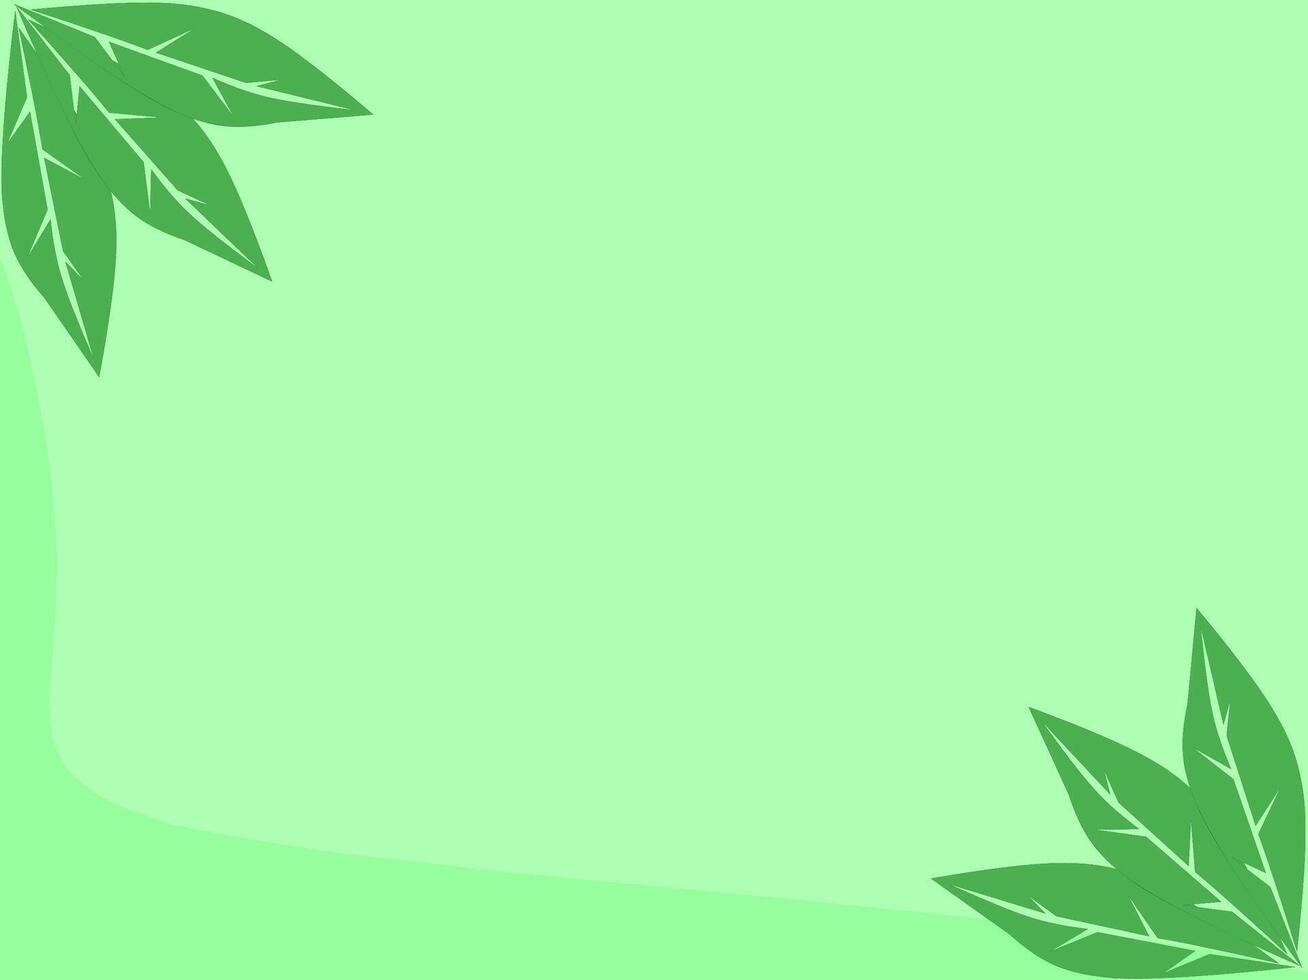 green and leaf color background illustration vector